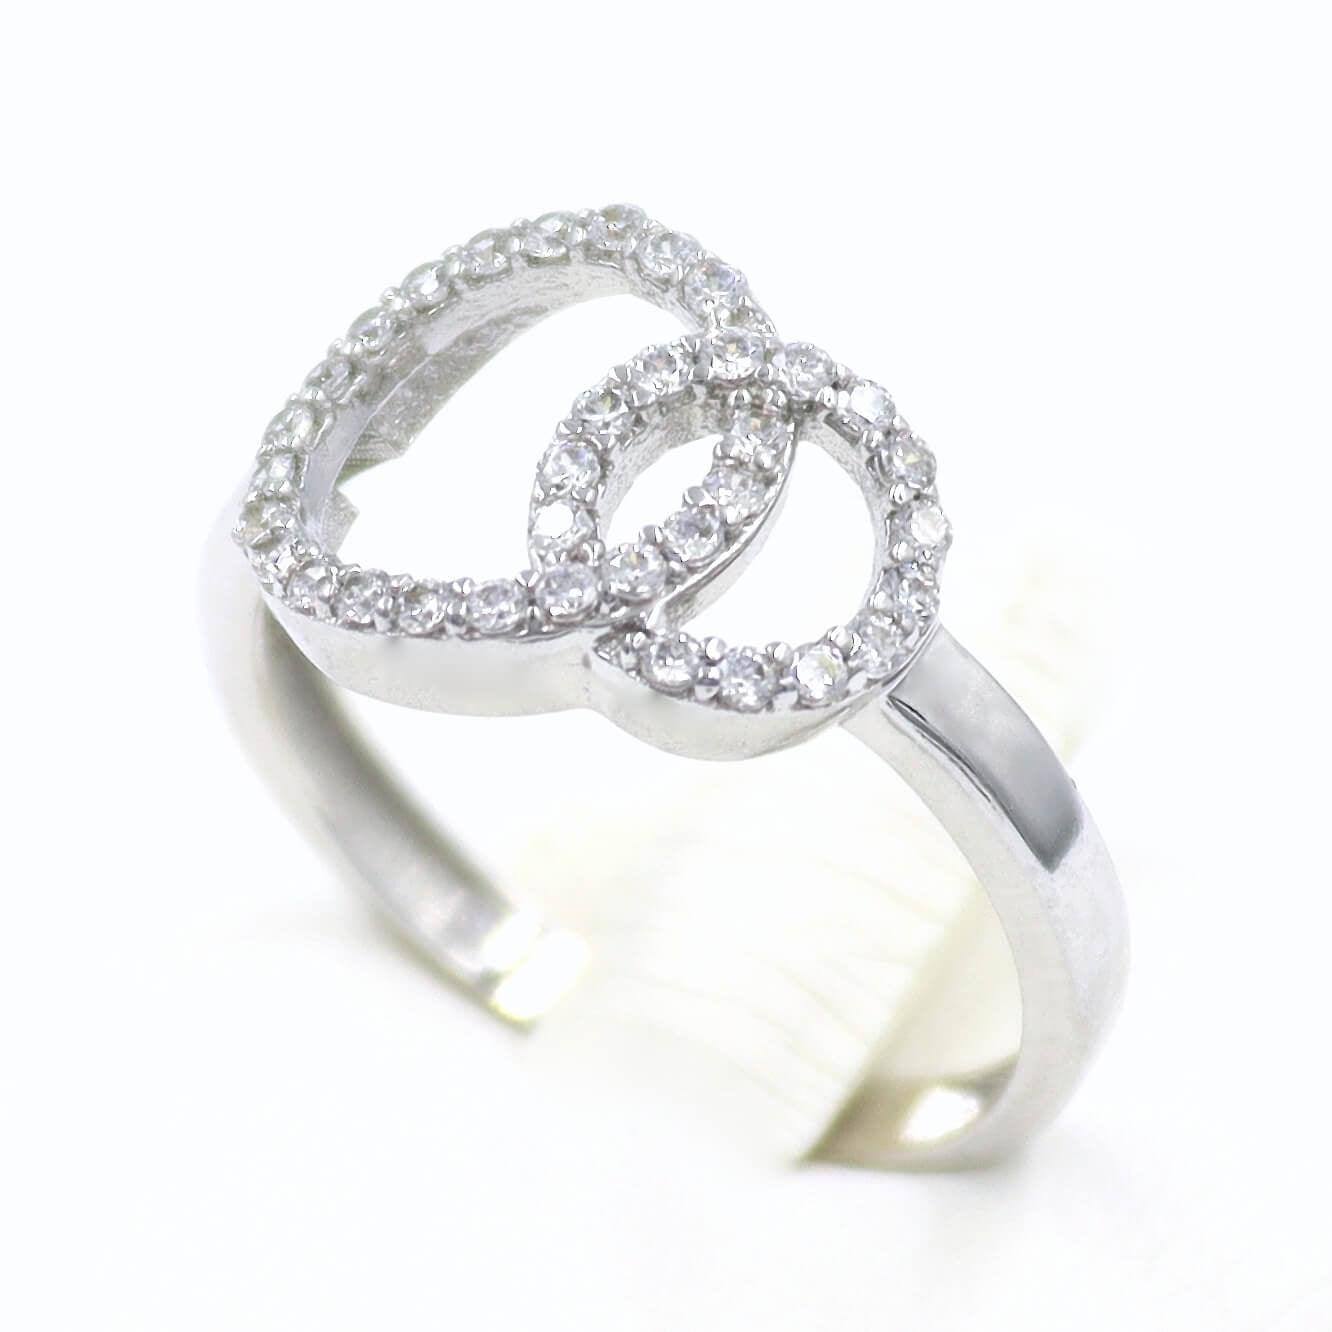 Λευκό χρυσό δαχτυλίδι γυναικείο, με λευκές πέτρες ζιργκόν